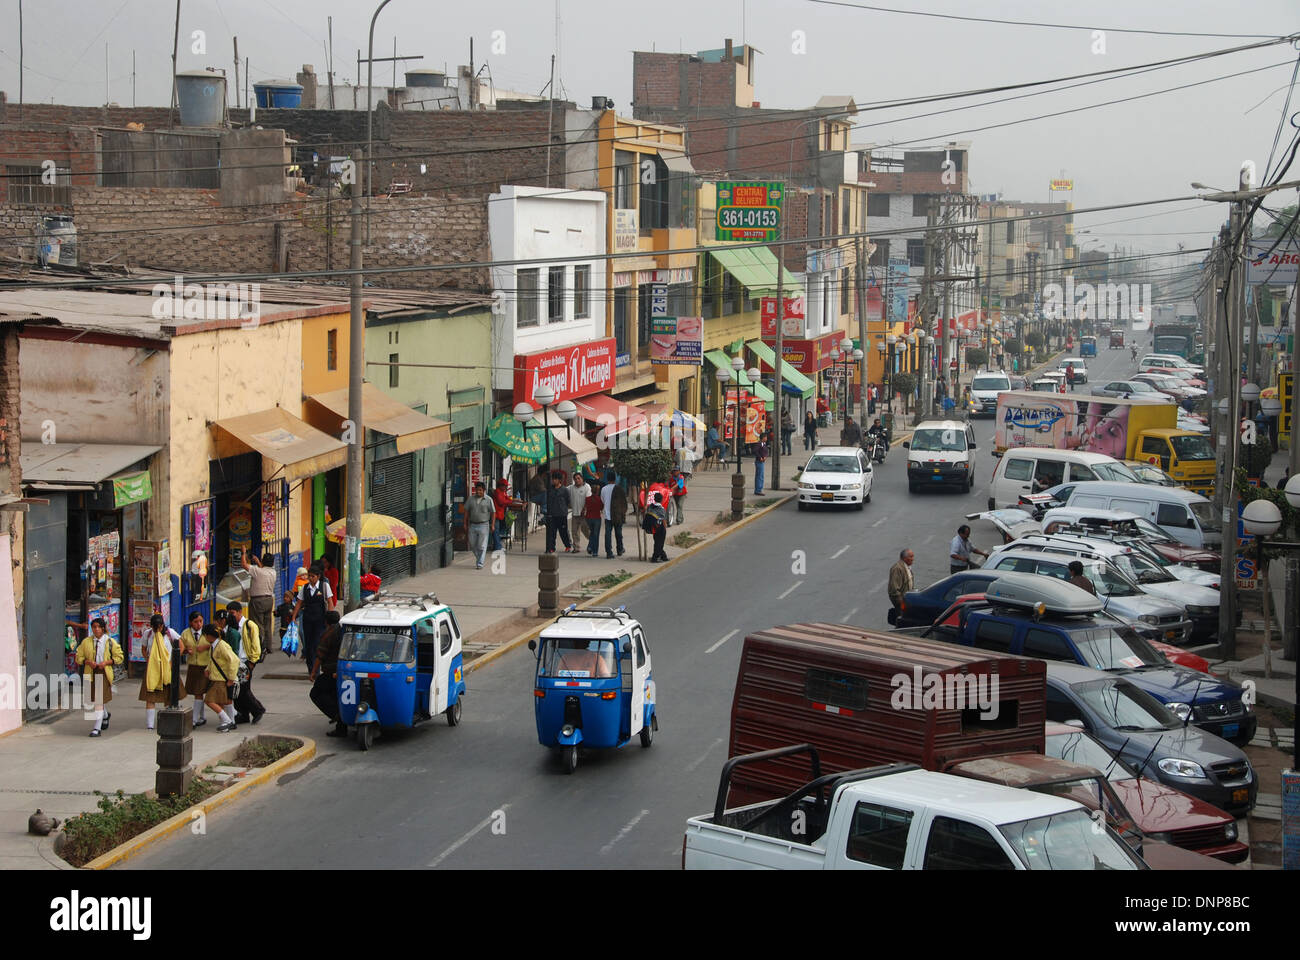 A busy street in Chosica, Peru Stock Photo